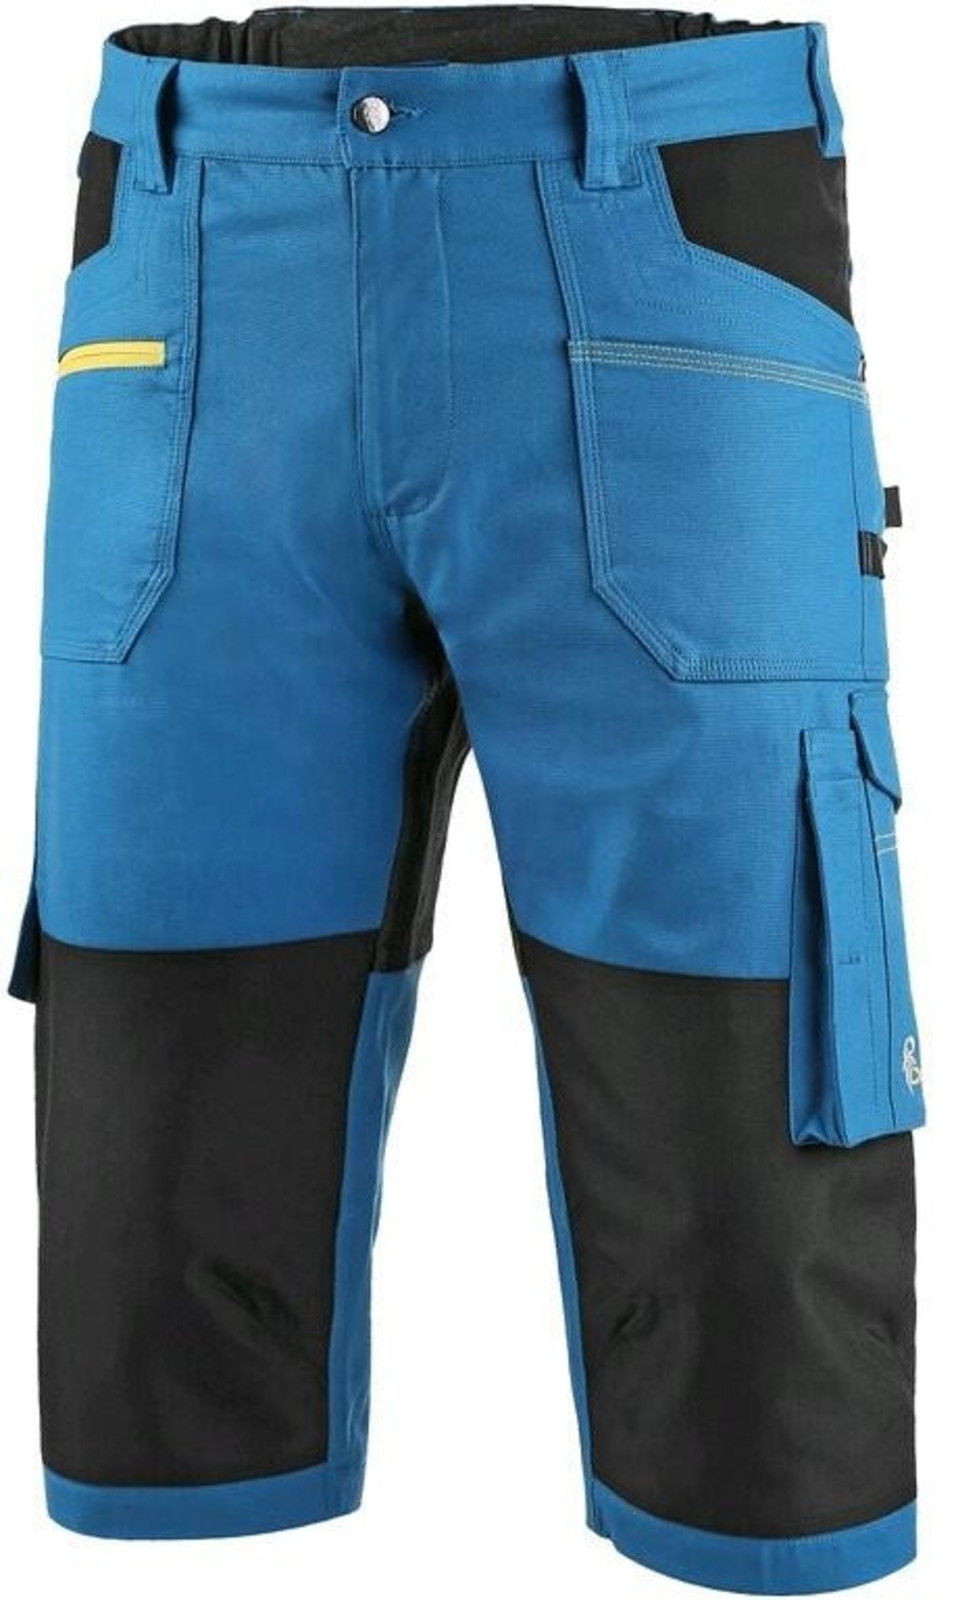 Pánske strečové montérkové 3/4 nohavice CXS Stretch - veľkosť: 48, farba: modrá/čierna